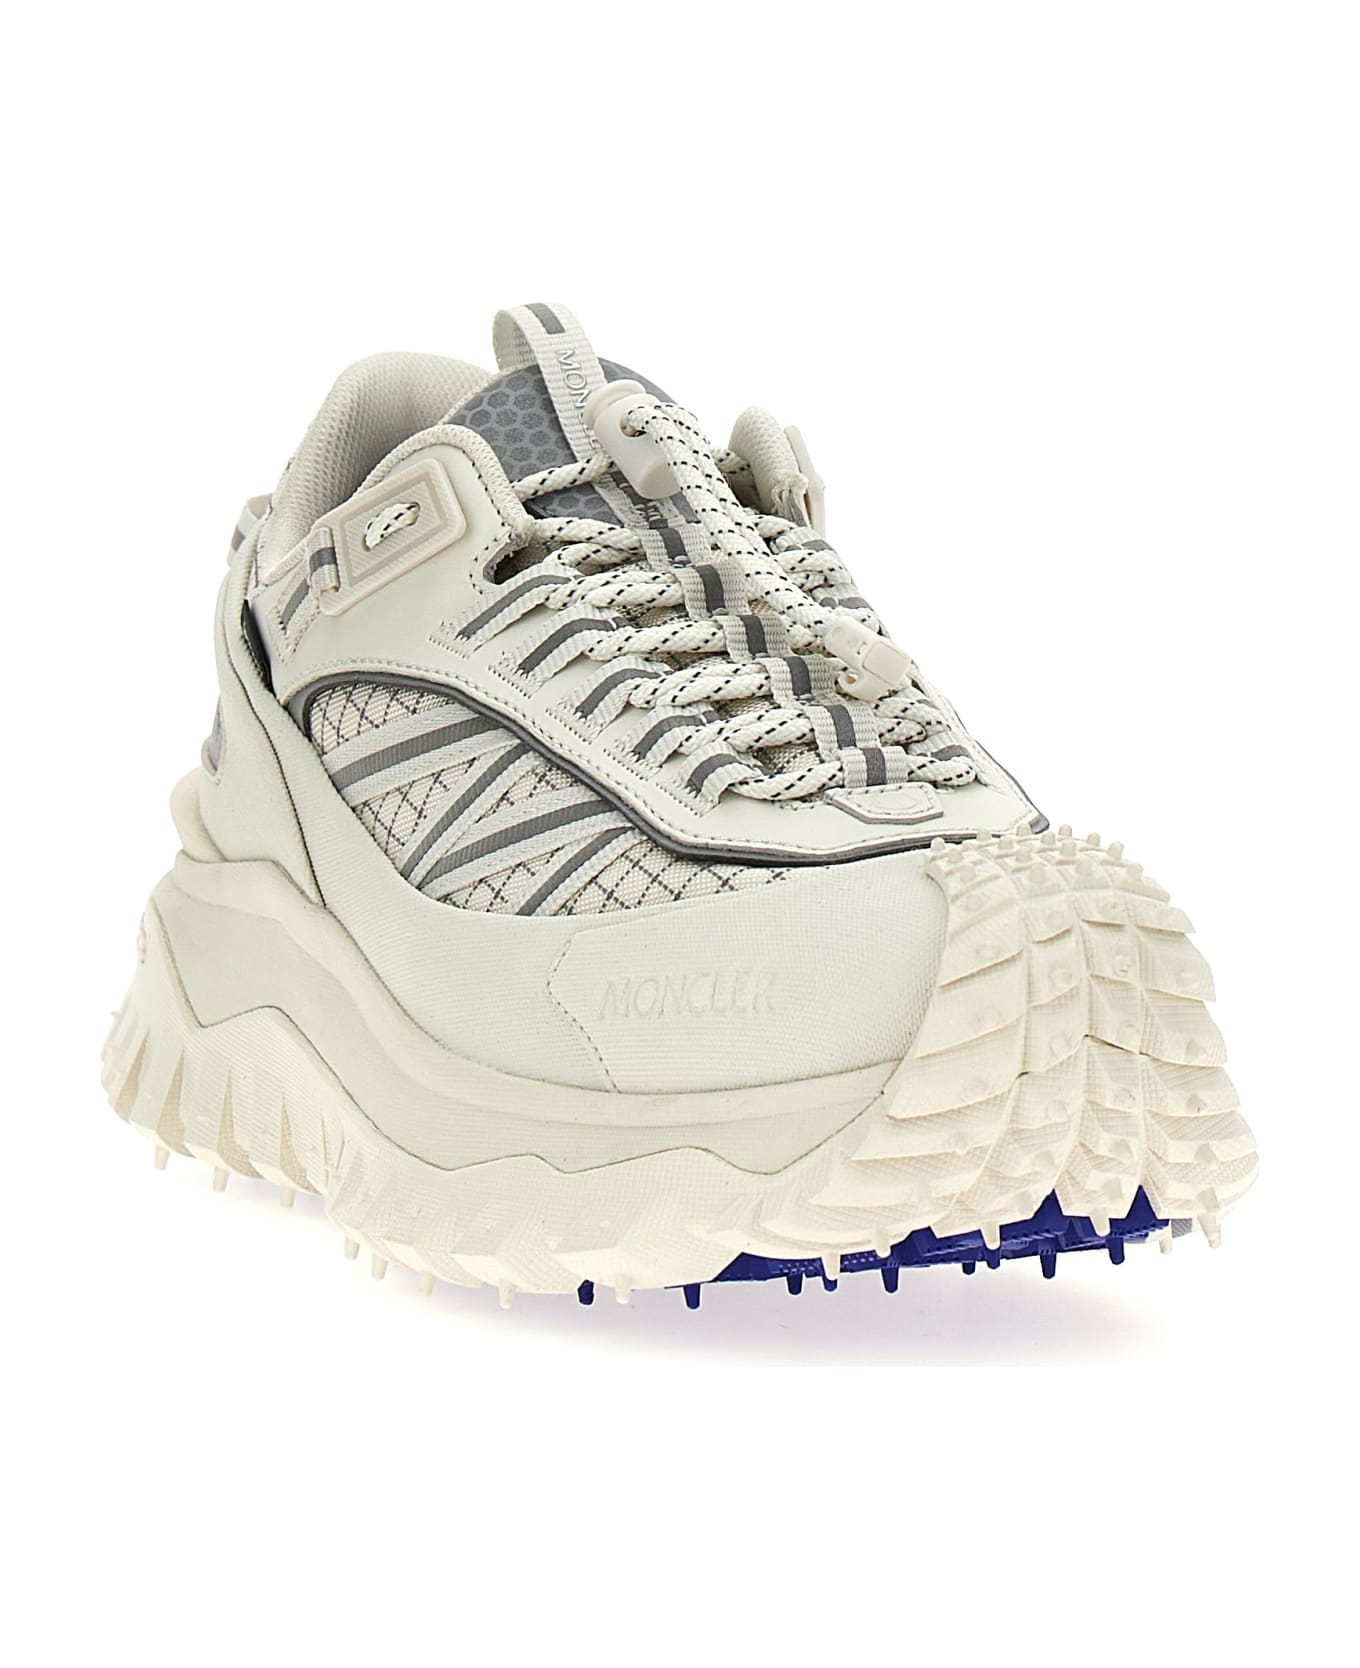 Moncler 'trailgrip Gtx' Sneakers - White スニーカー